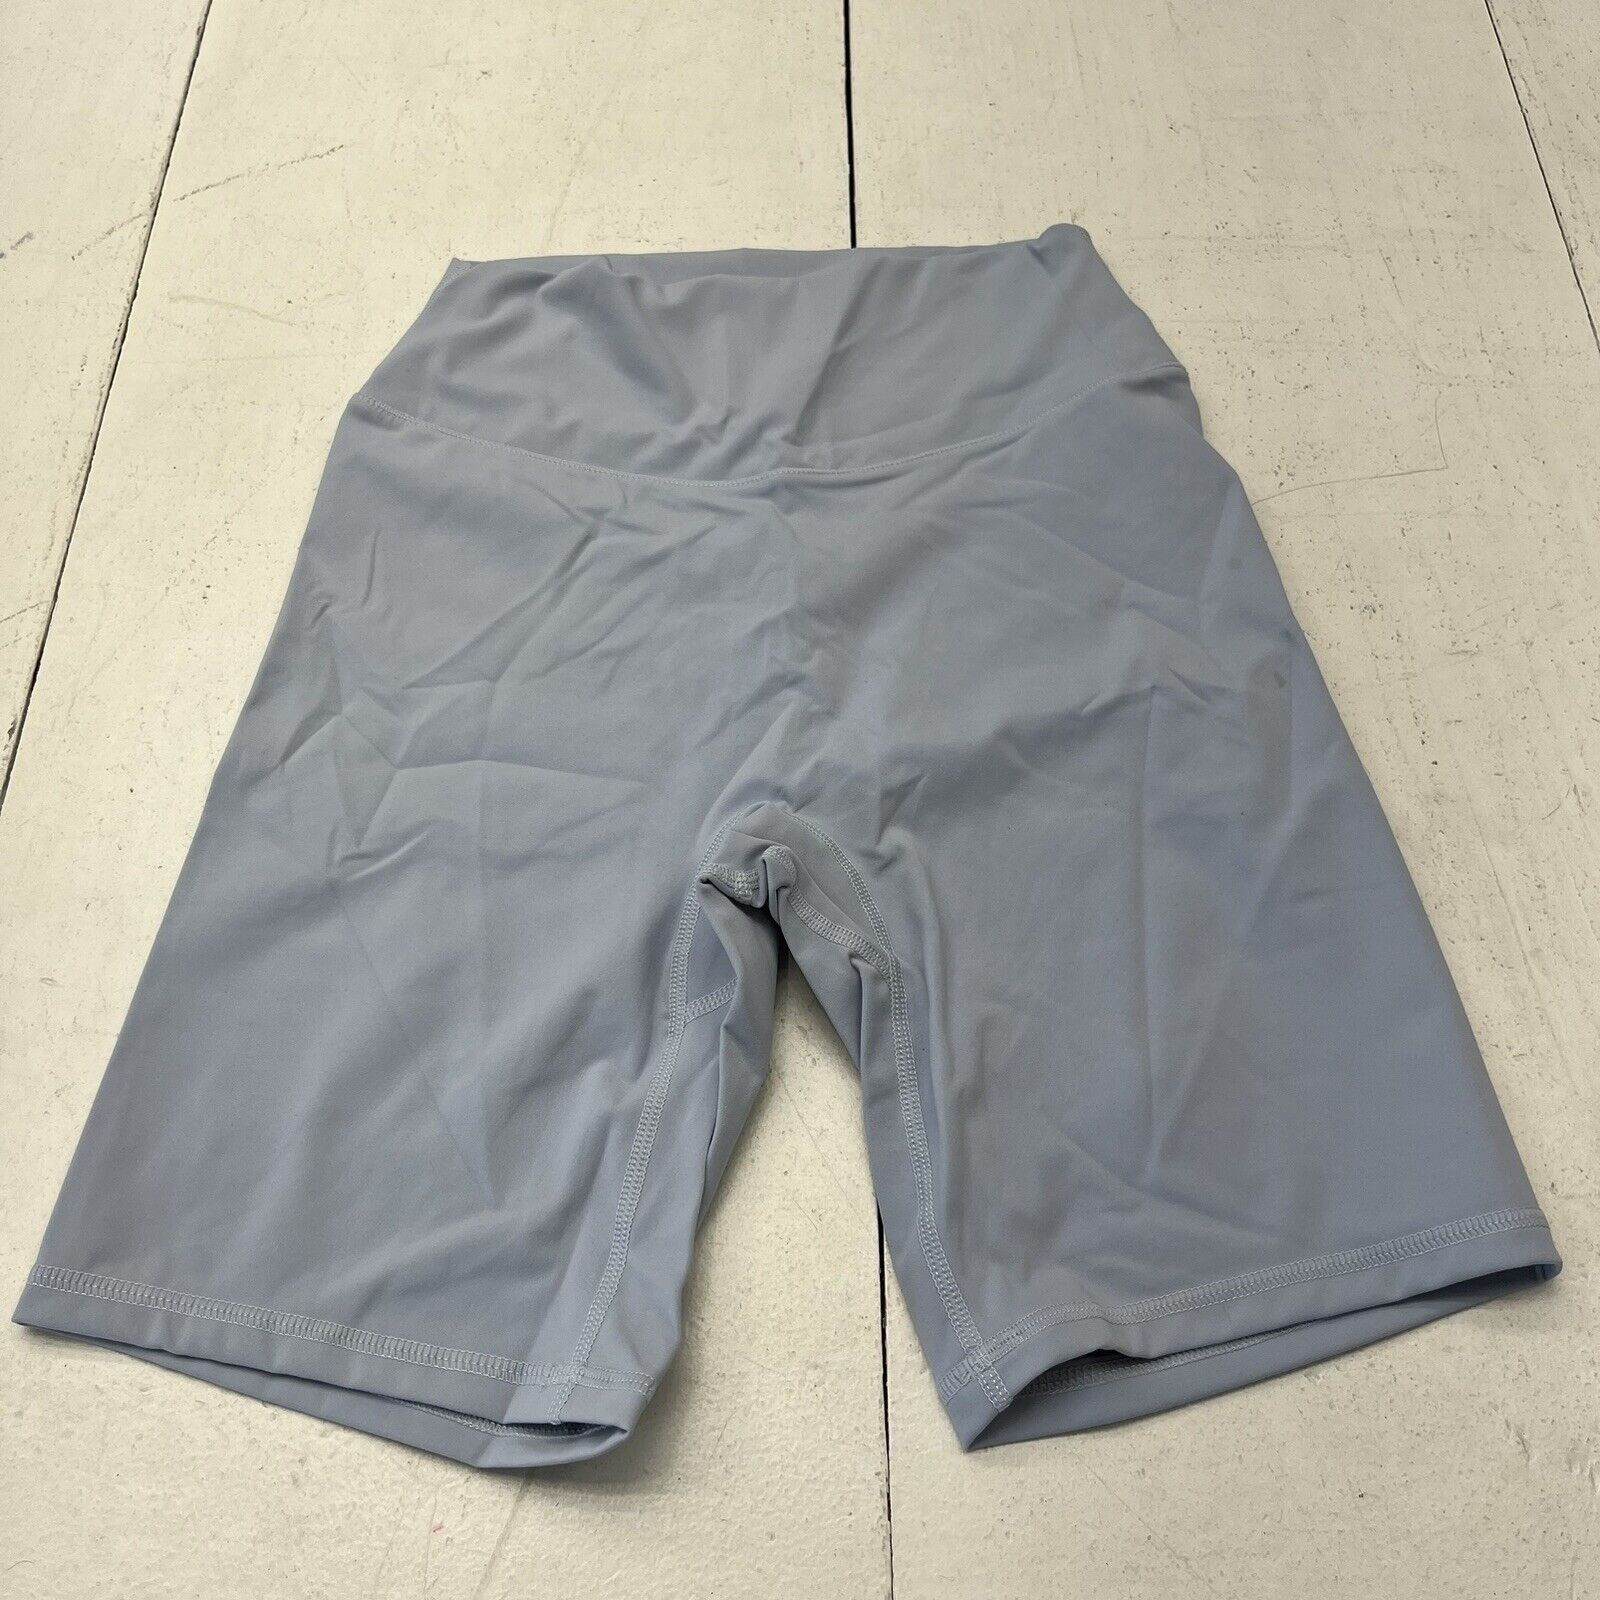 Sunzel Light Blue 8” Biker Shorts Women’s Size Small NEW